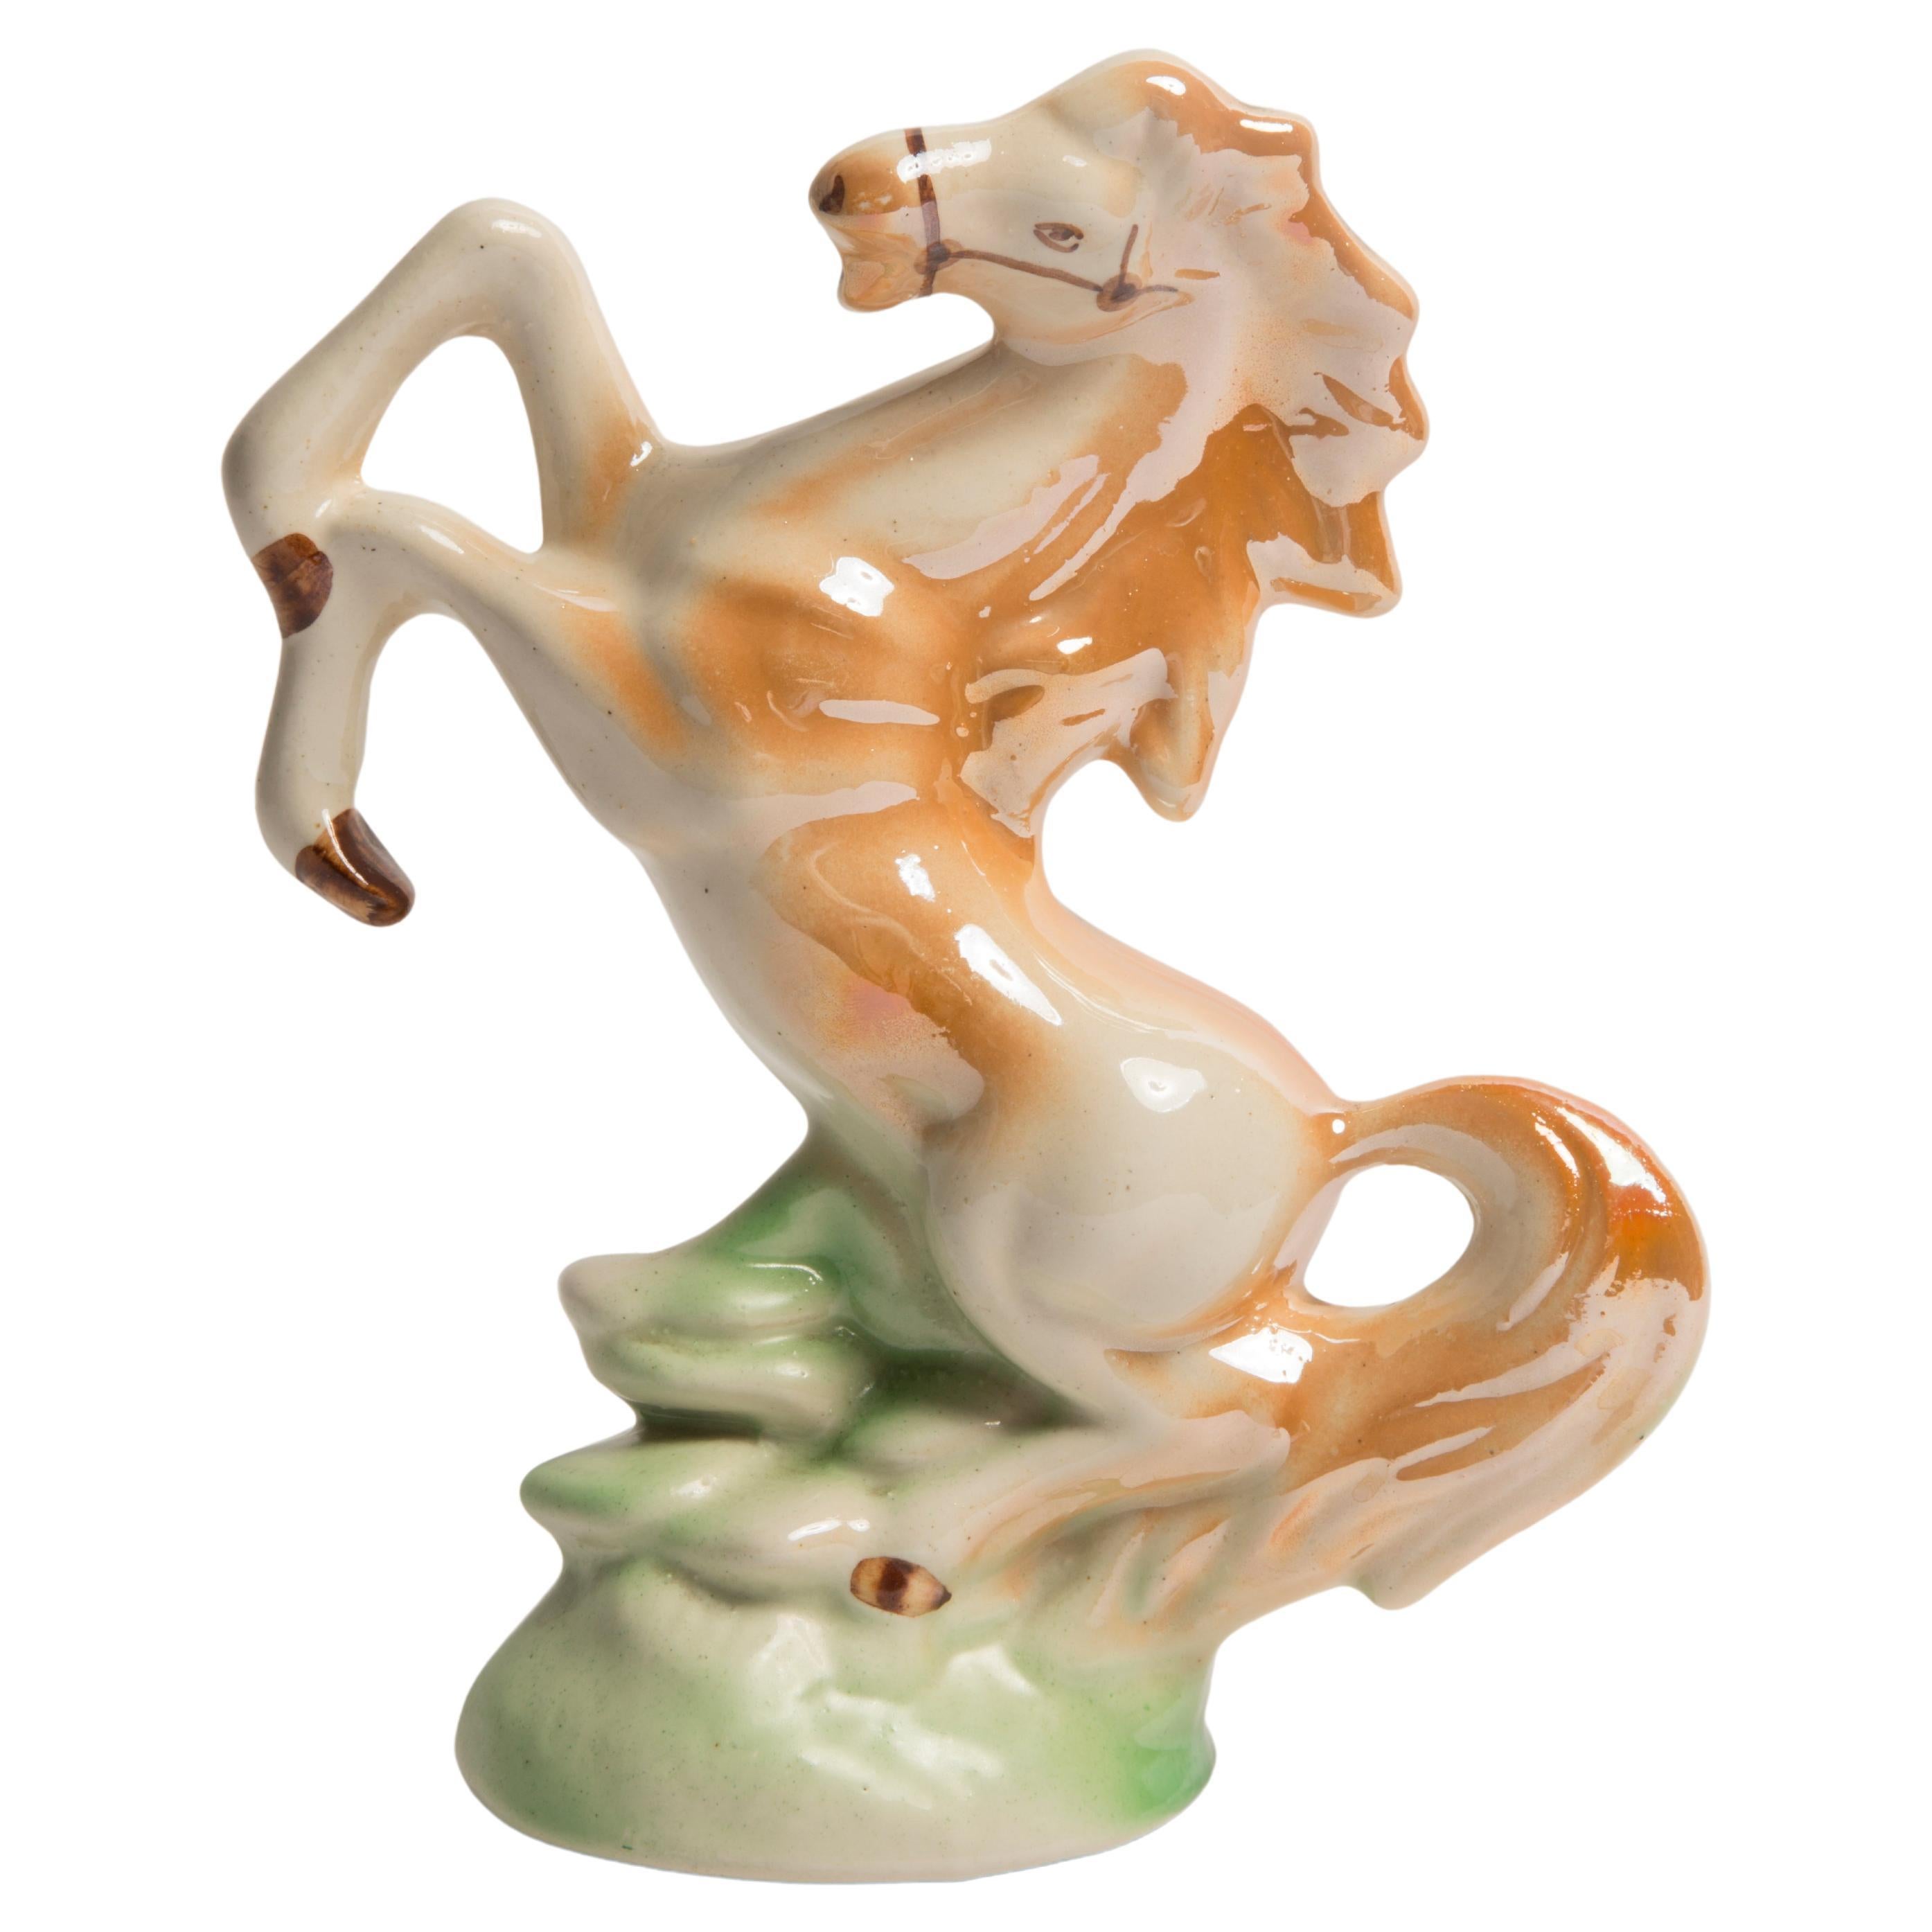 Midcentury Ceramic Porcelain Decorative Horse Sculpture, Europe, 1960s